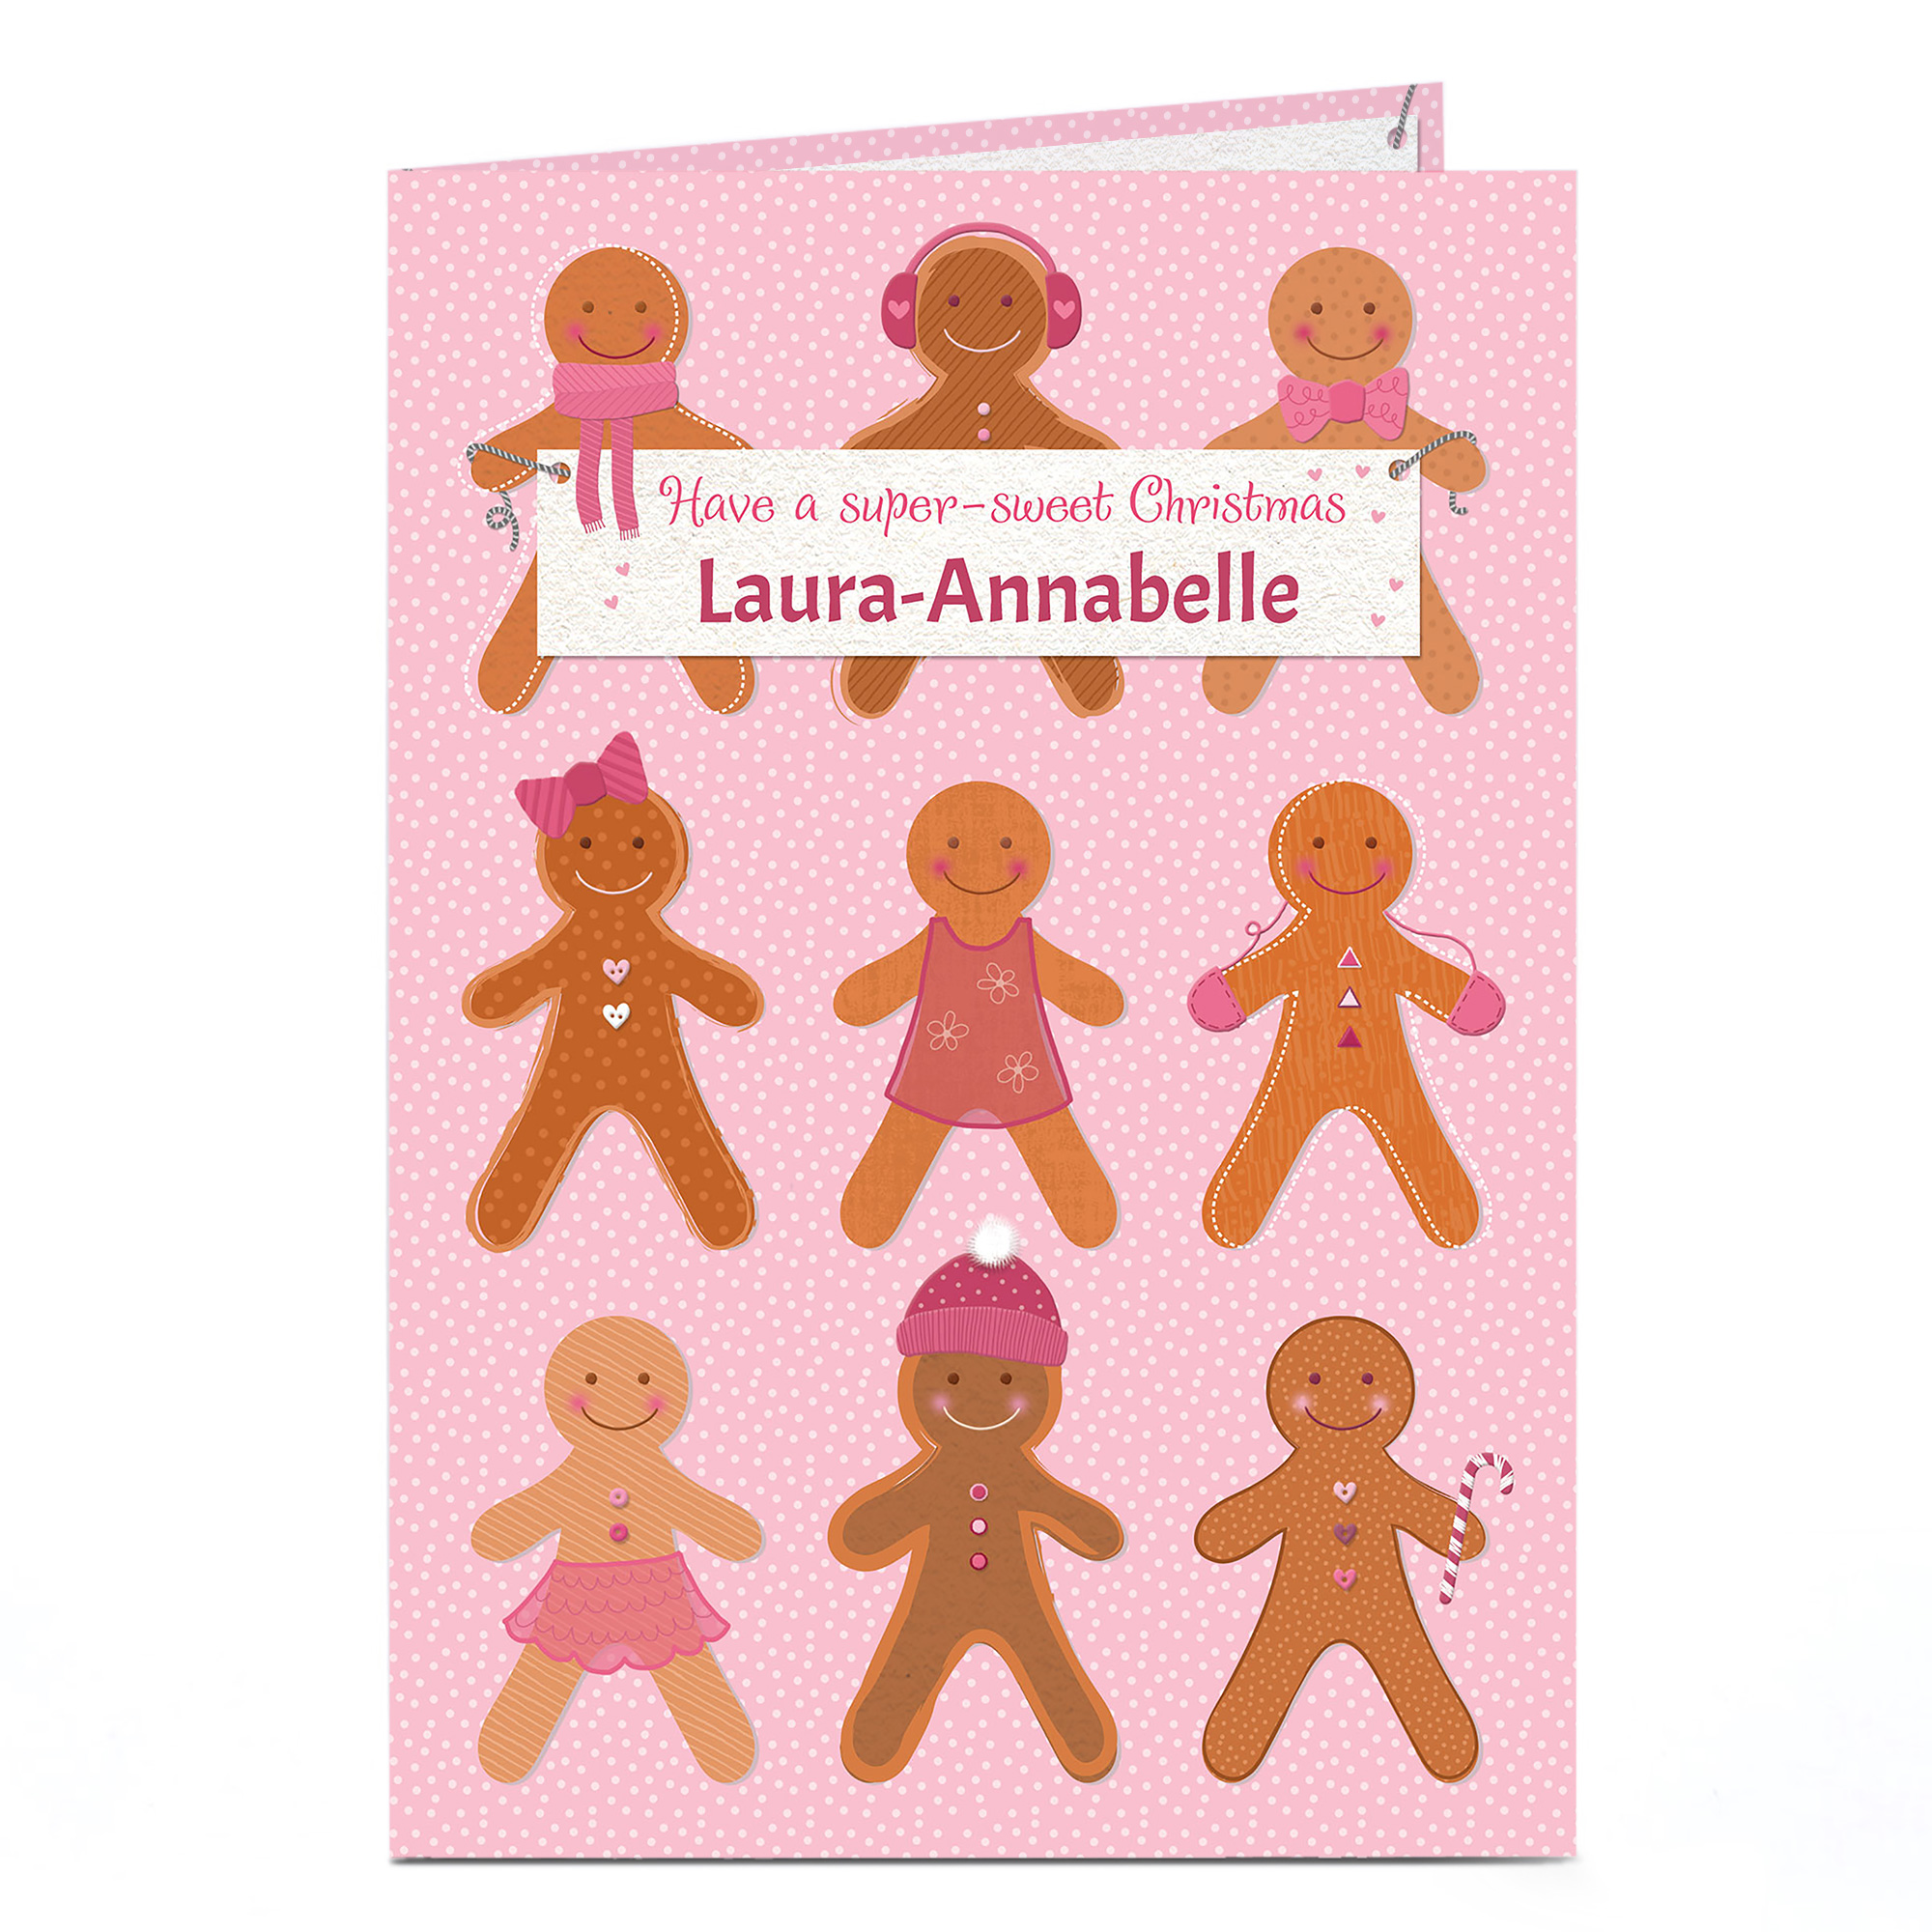 Personalised Christmas Card - Gingerbread People